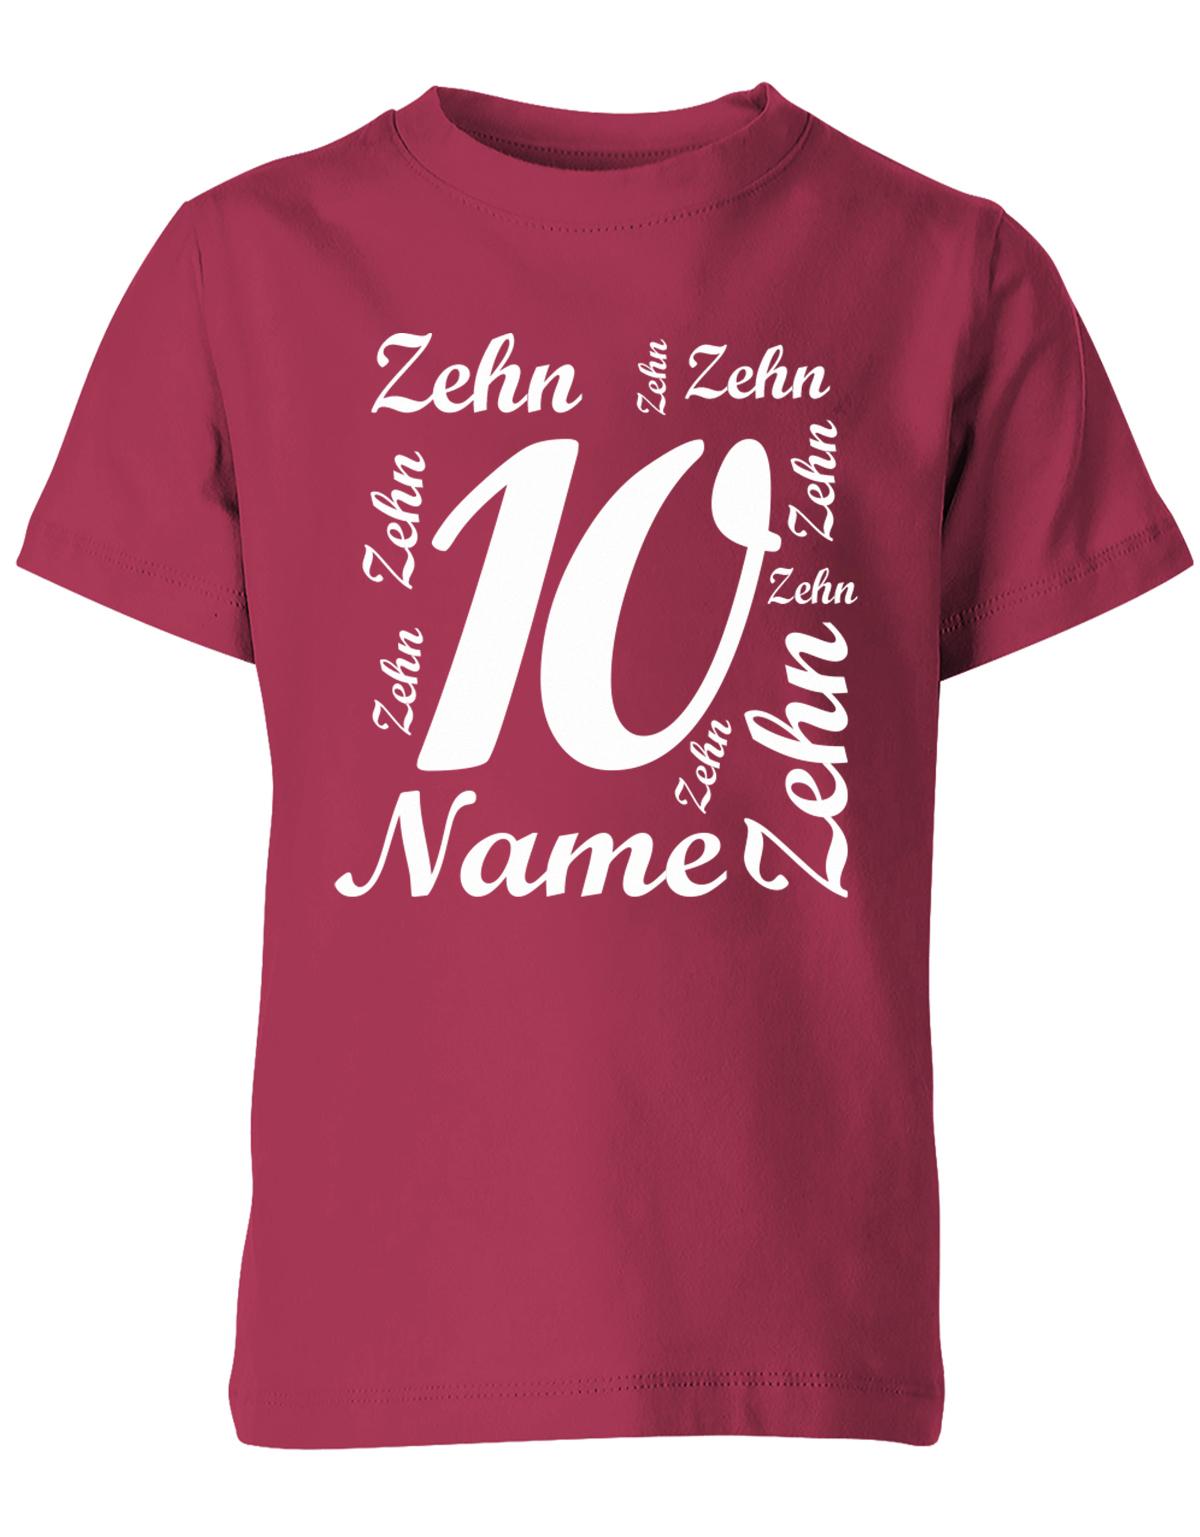 ich-bin-10-viele-zehnen-mit-name-geburtstag-kinder-shirt-sorbet